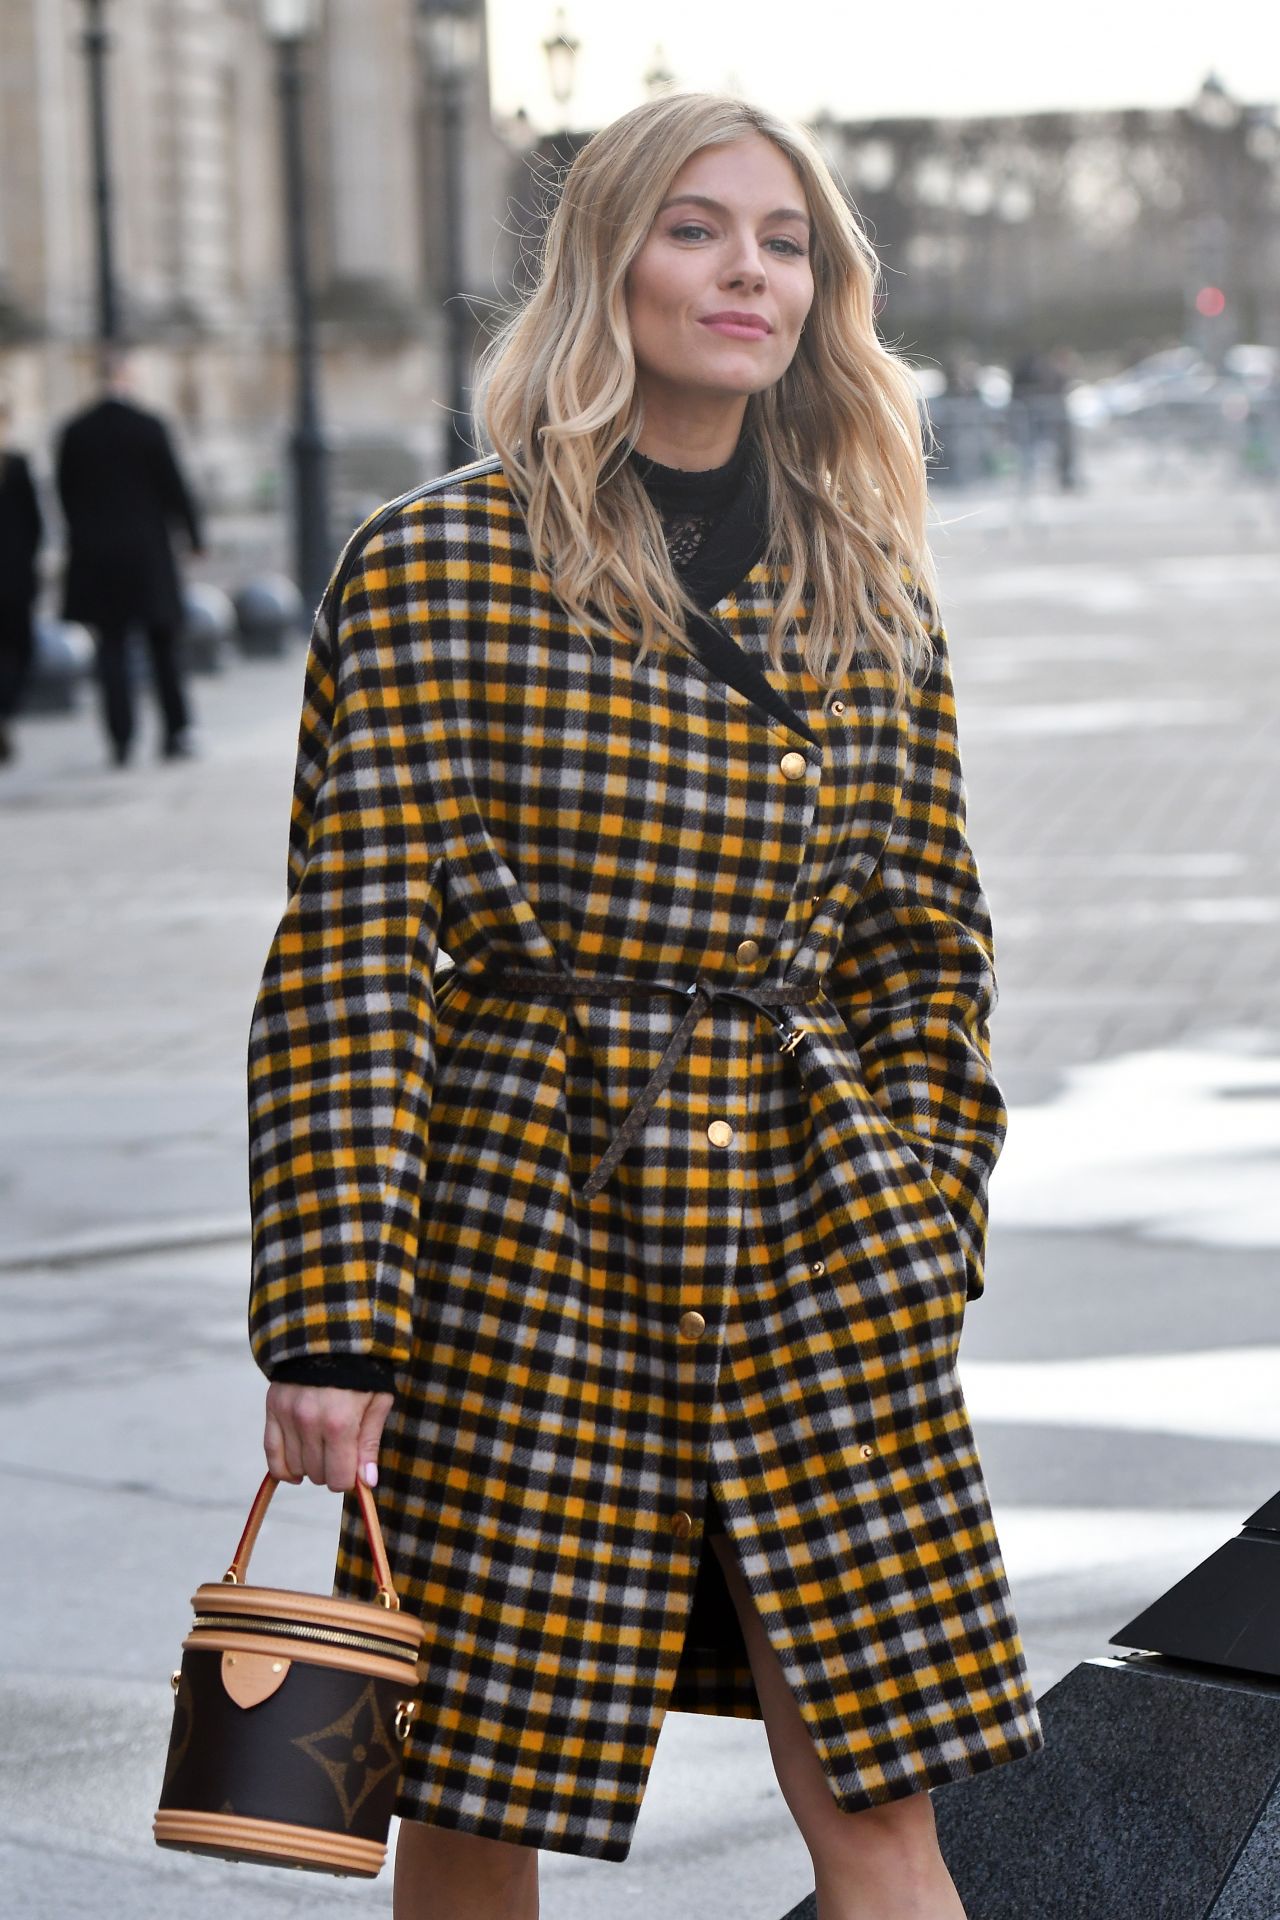 Sienna Miller Louis Vuitton Fall Fashion Show March 05, 2019